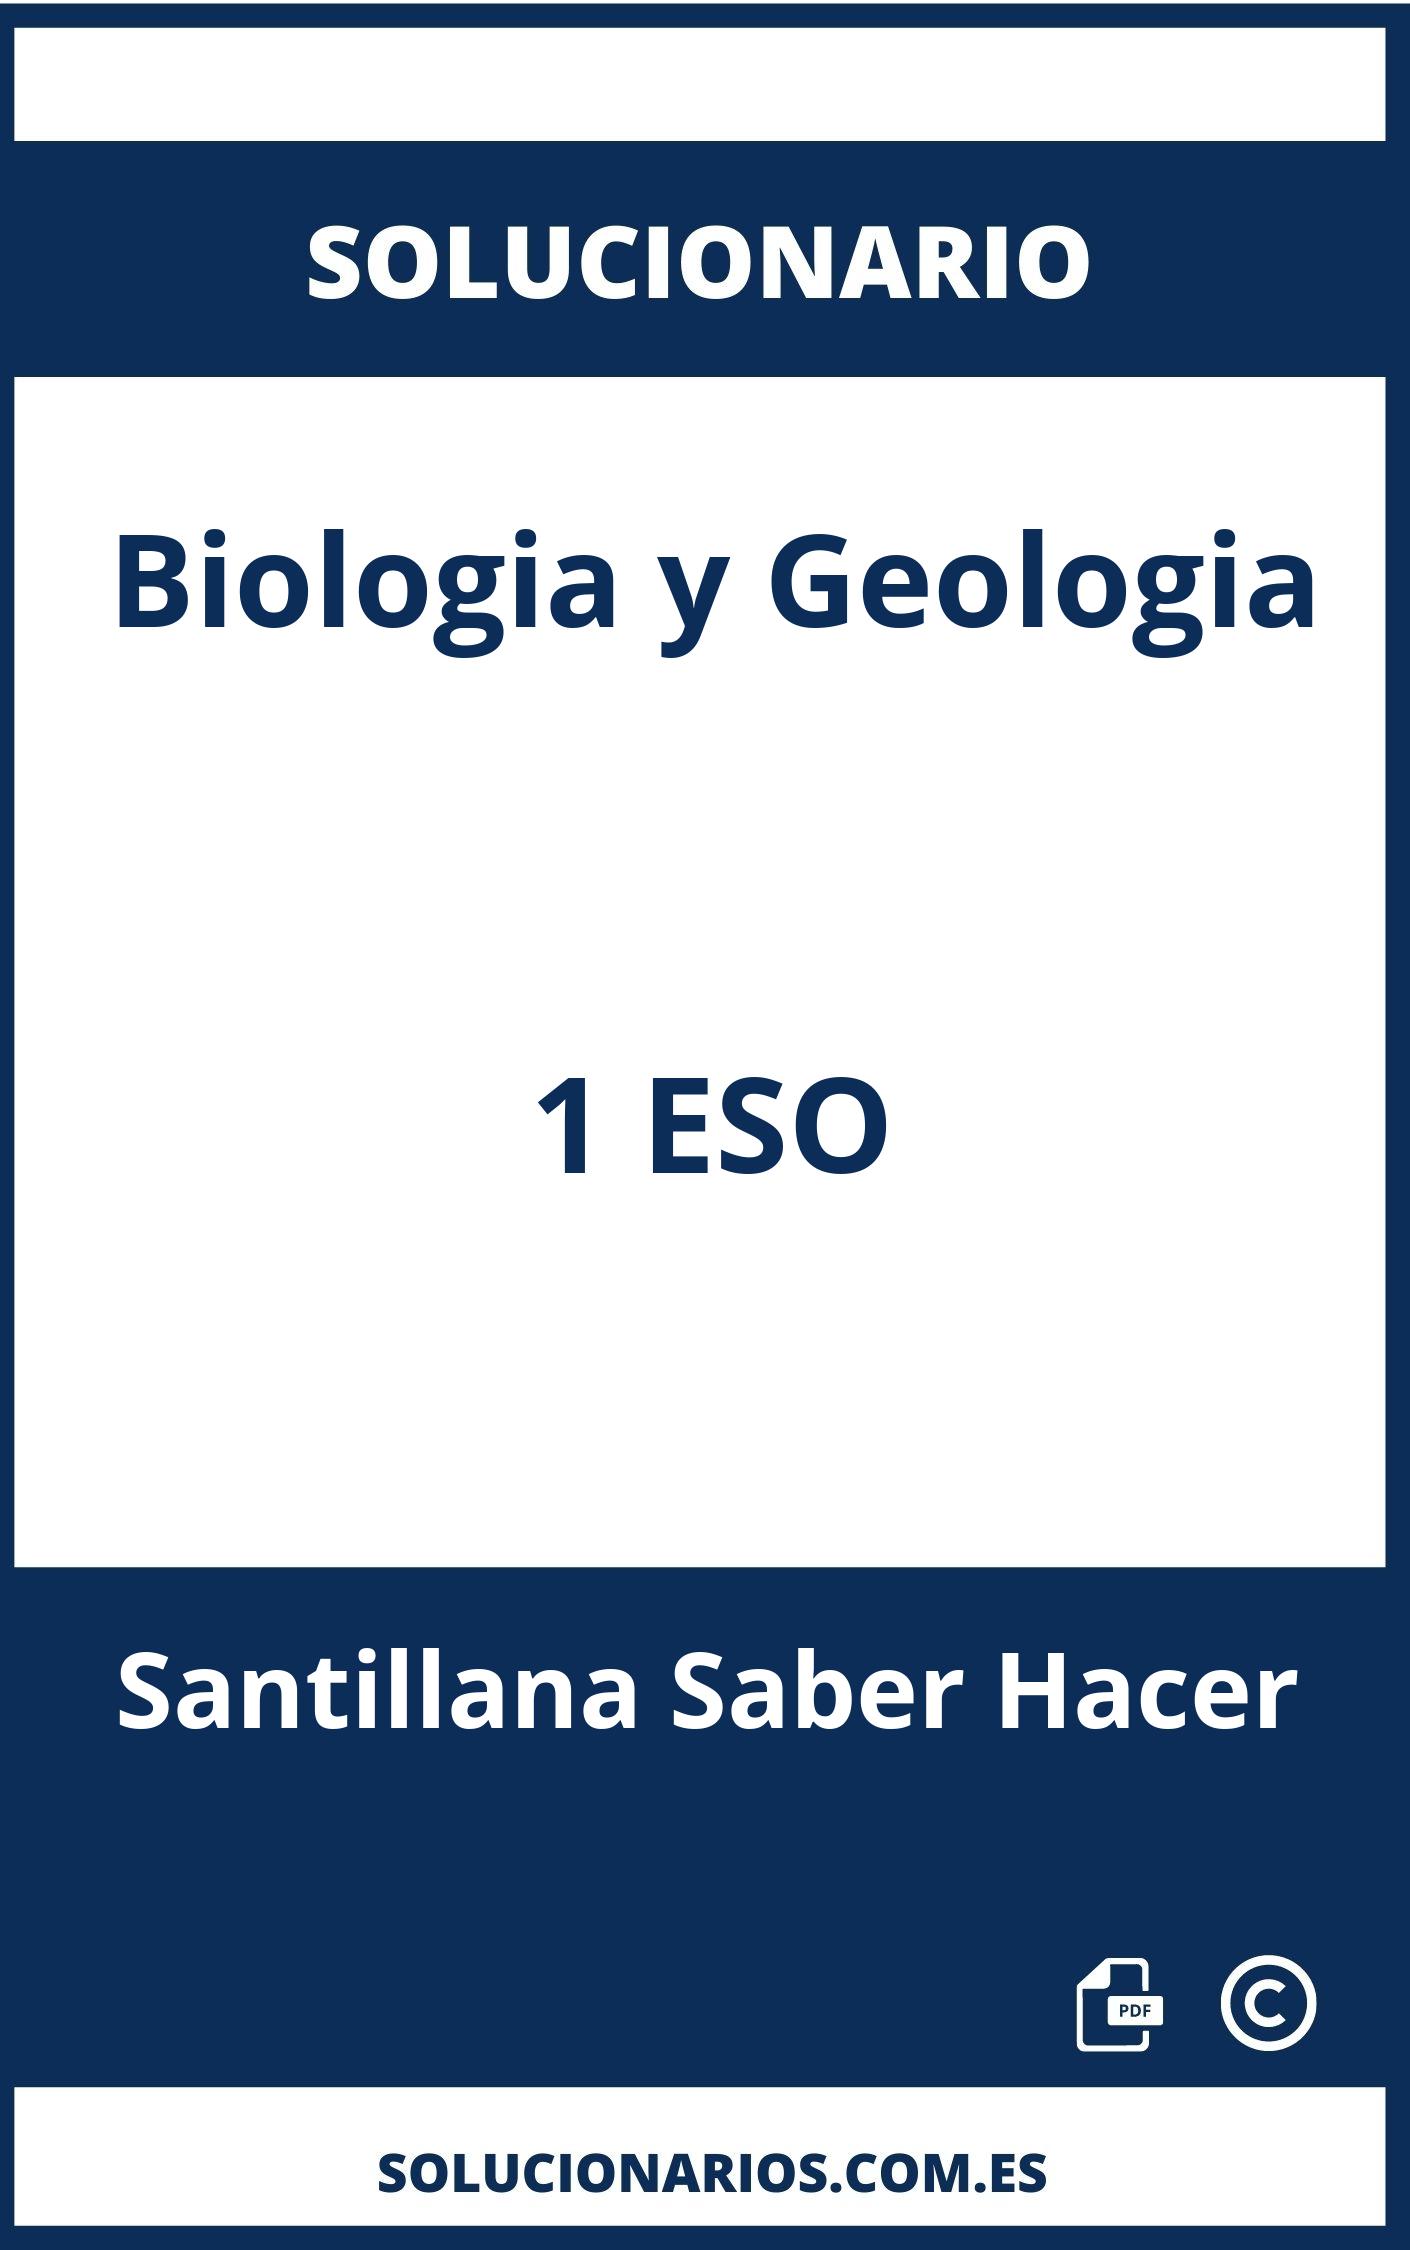 Solucionario Biologia y Geologia 1 ESO Santillana Saber Hacer